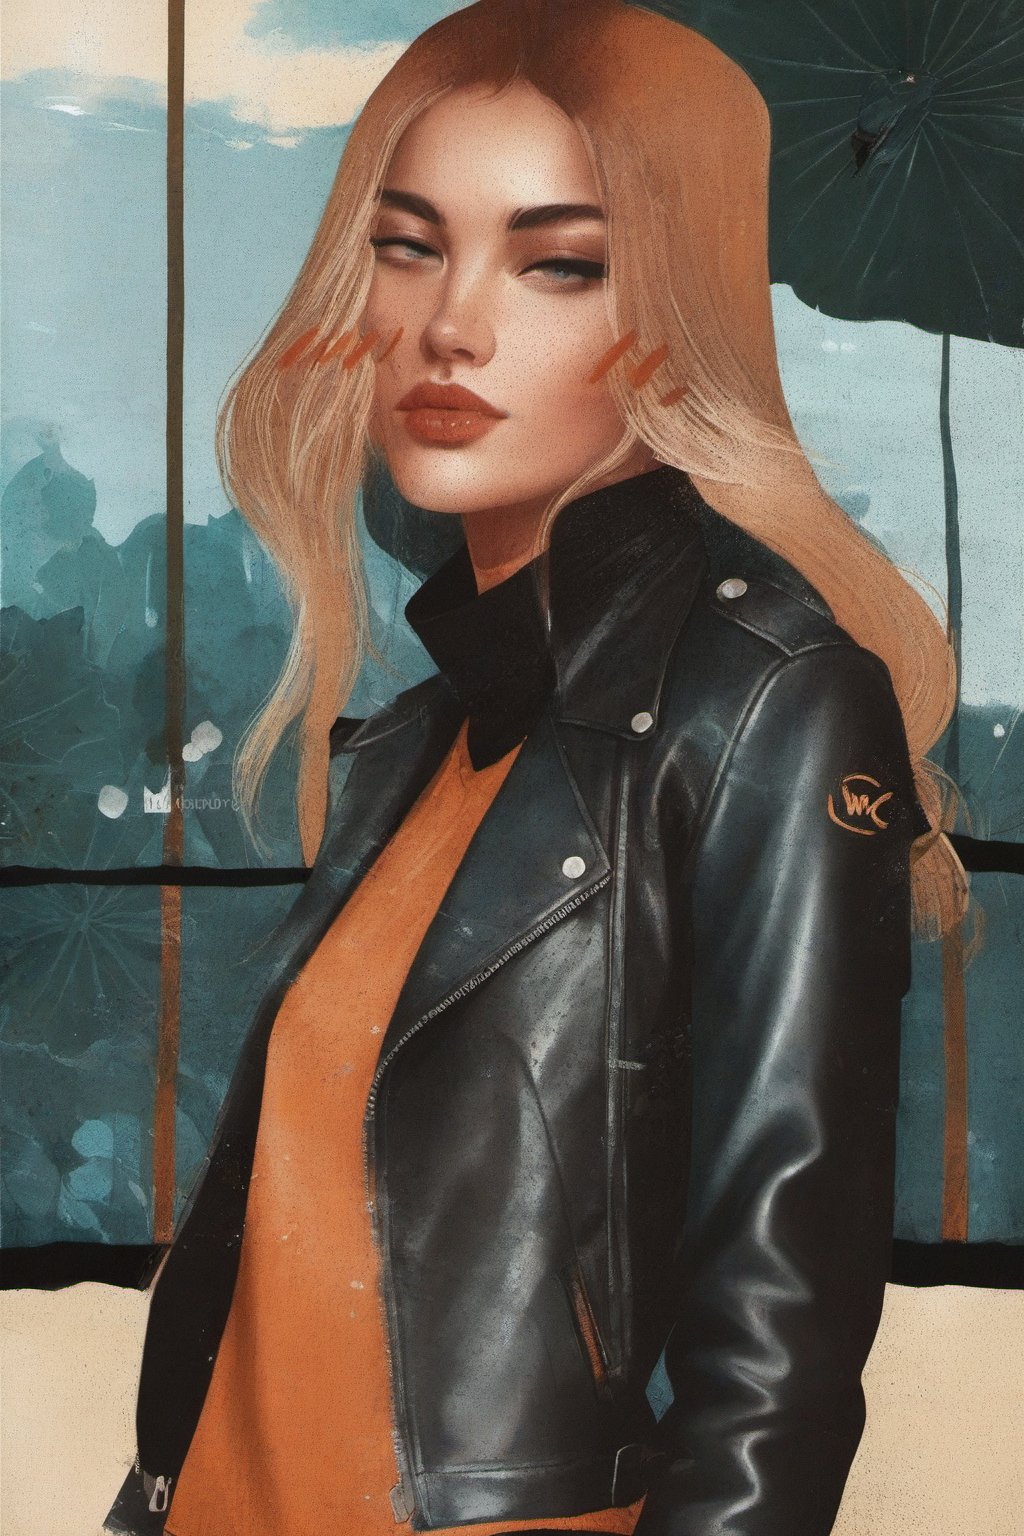 a potrait gorgeous  babe posing ✌️😘 ,  ,elaborated background , leather jacket , gloves, xWOCx illustration style